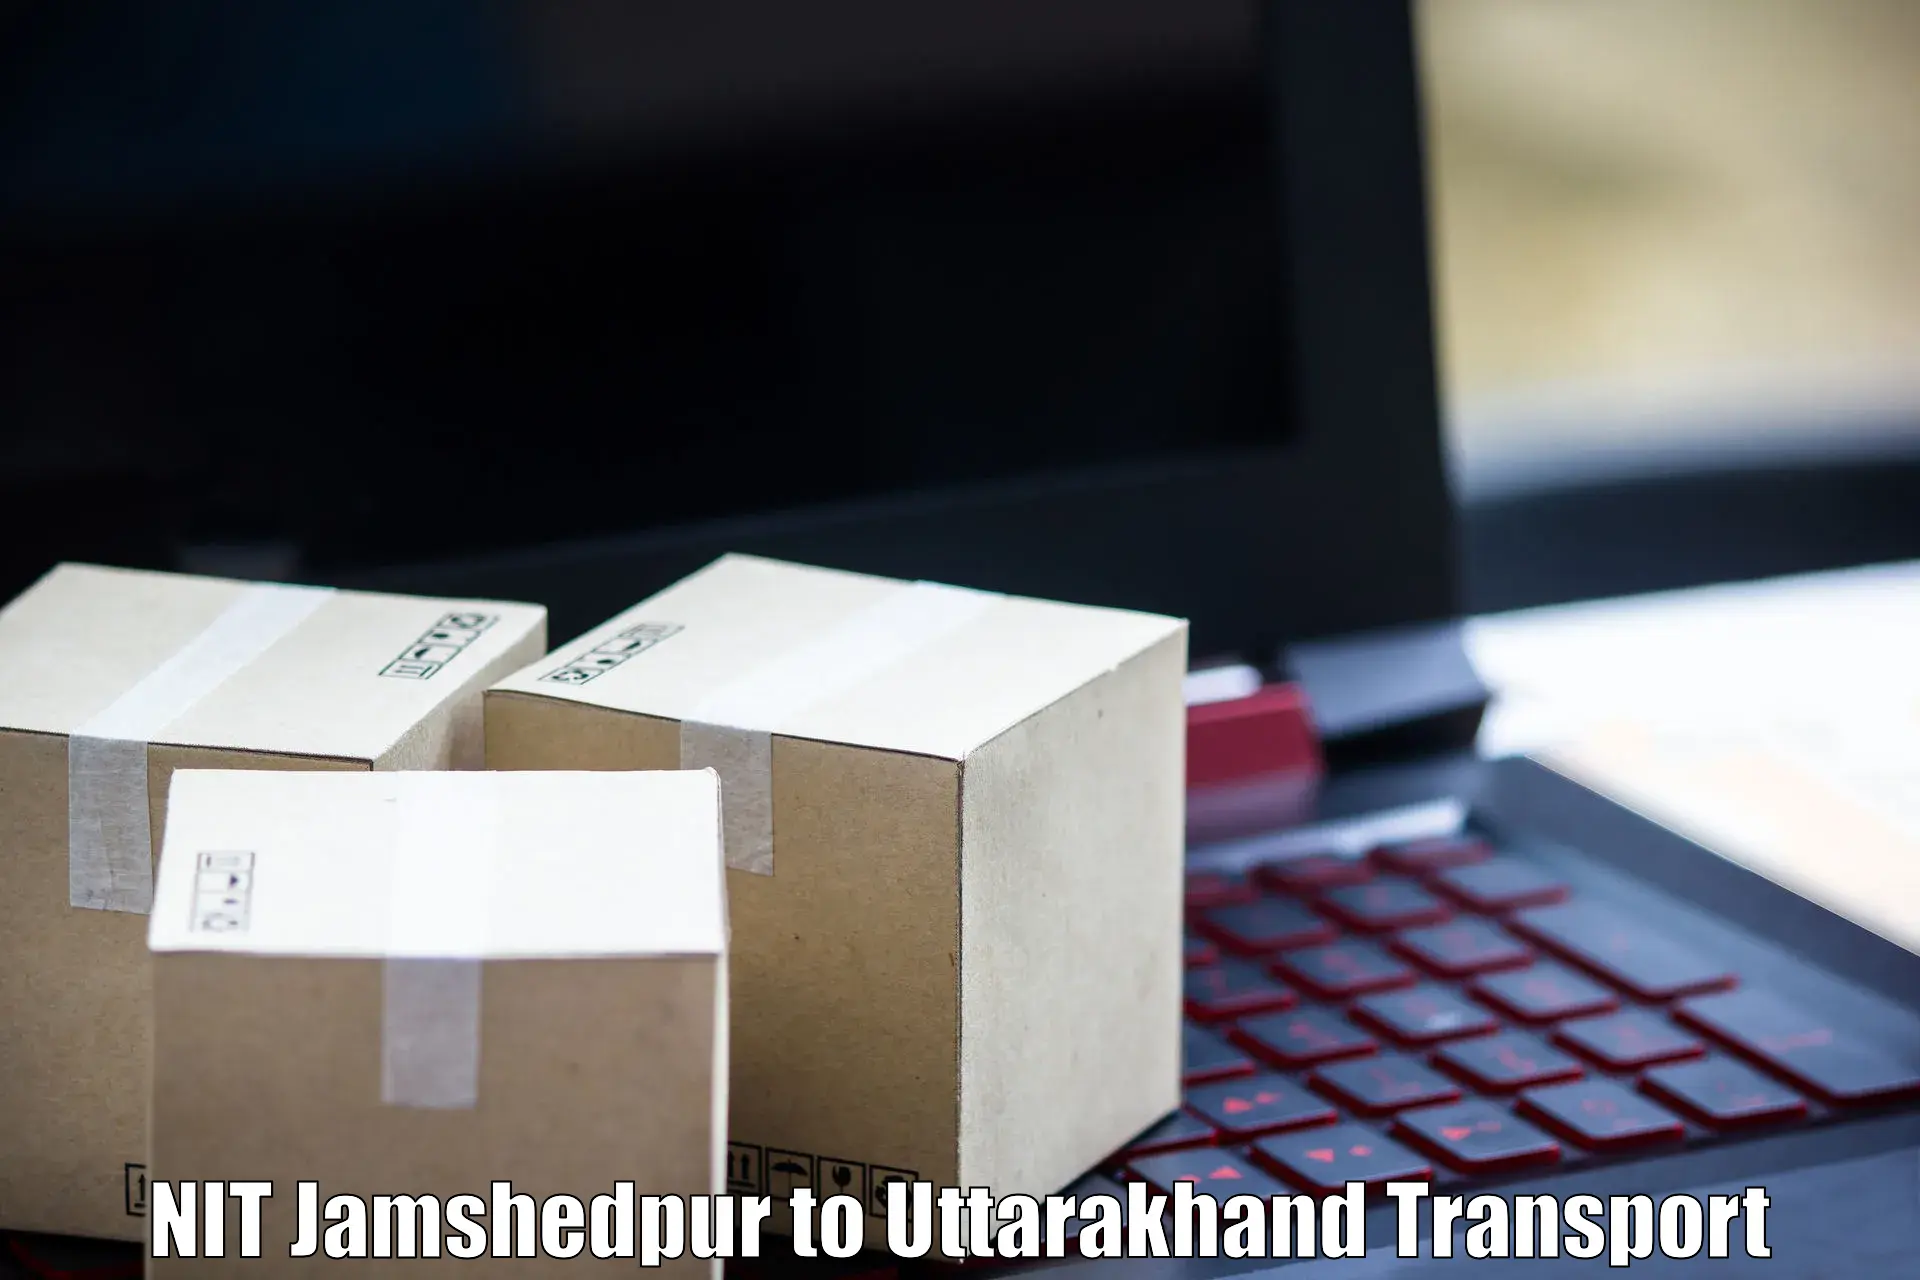 Cargo transport services NIT Jamshedpur to Kotdwara